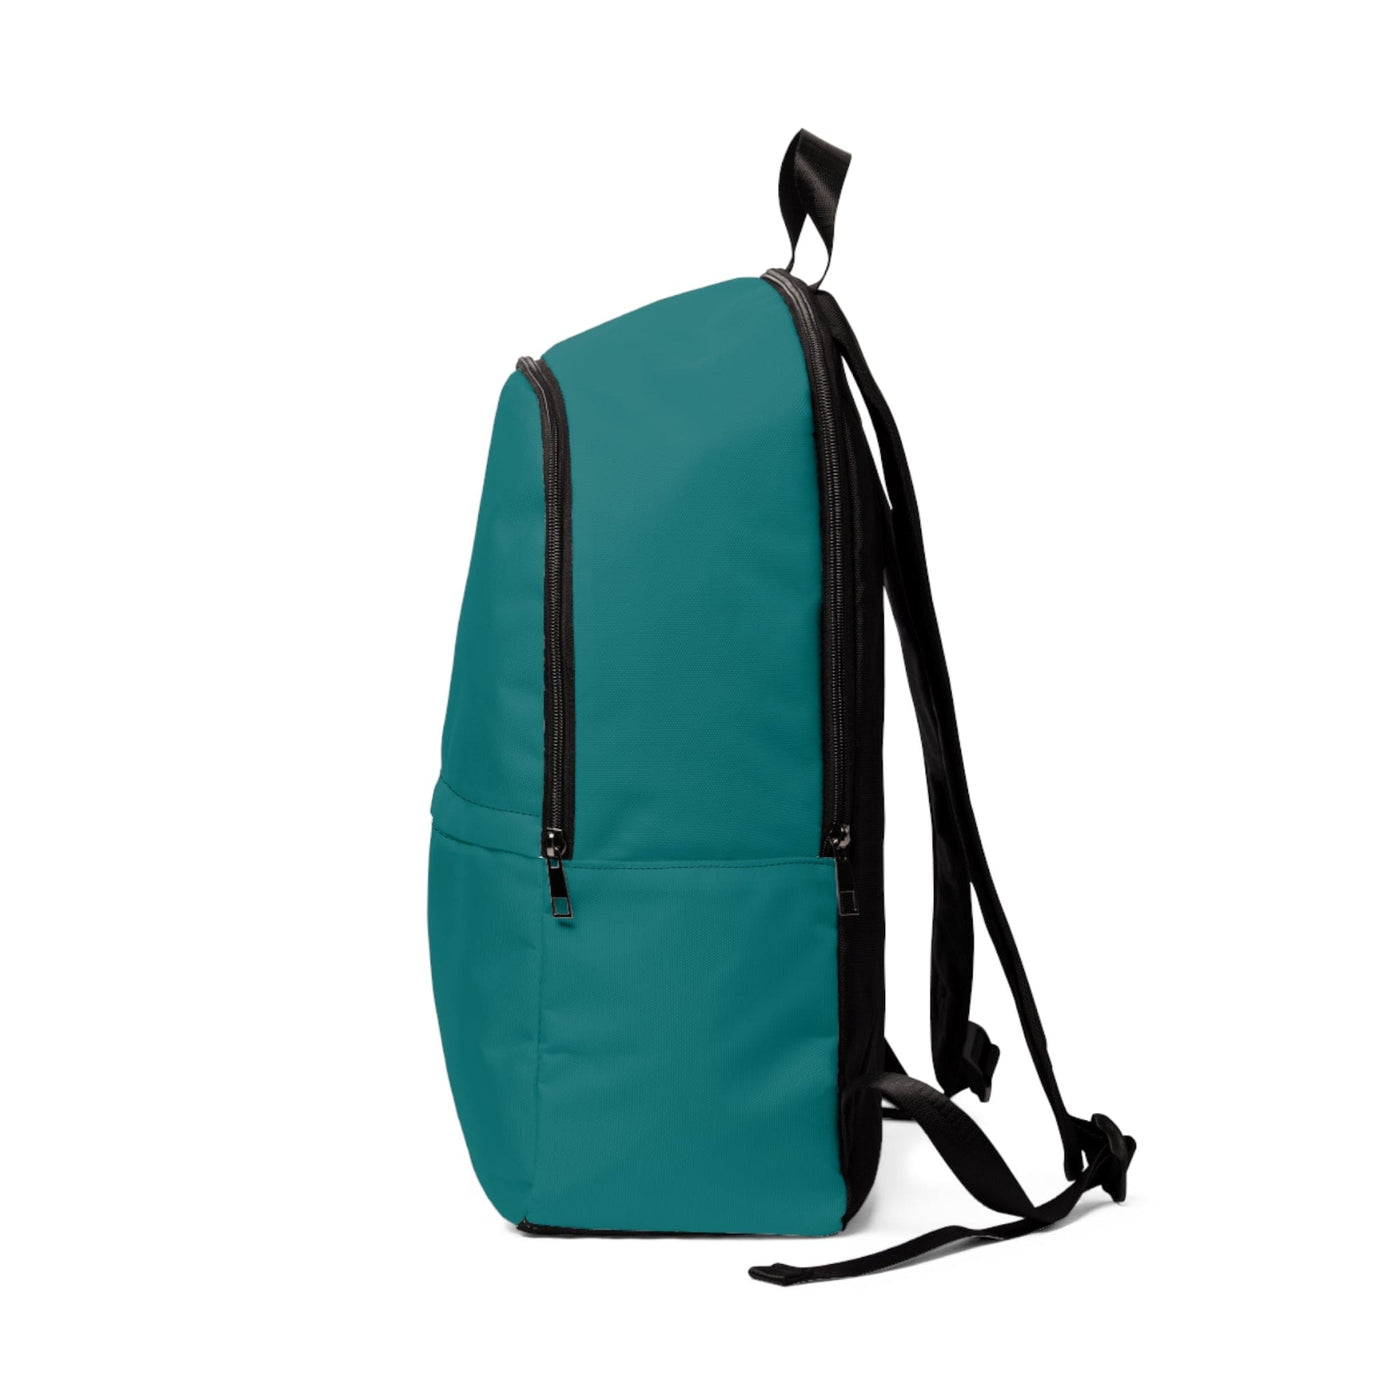 Fashion Backpack Waterproof Dark Teal Green - Bags